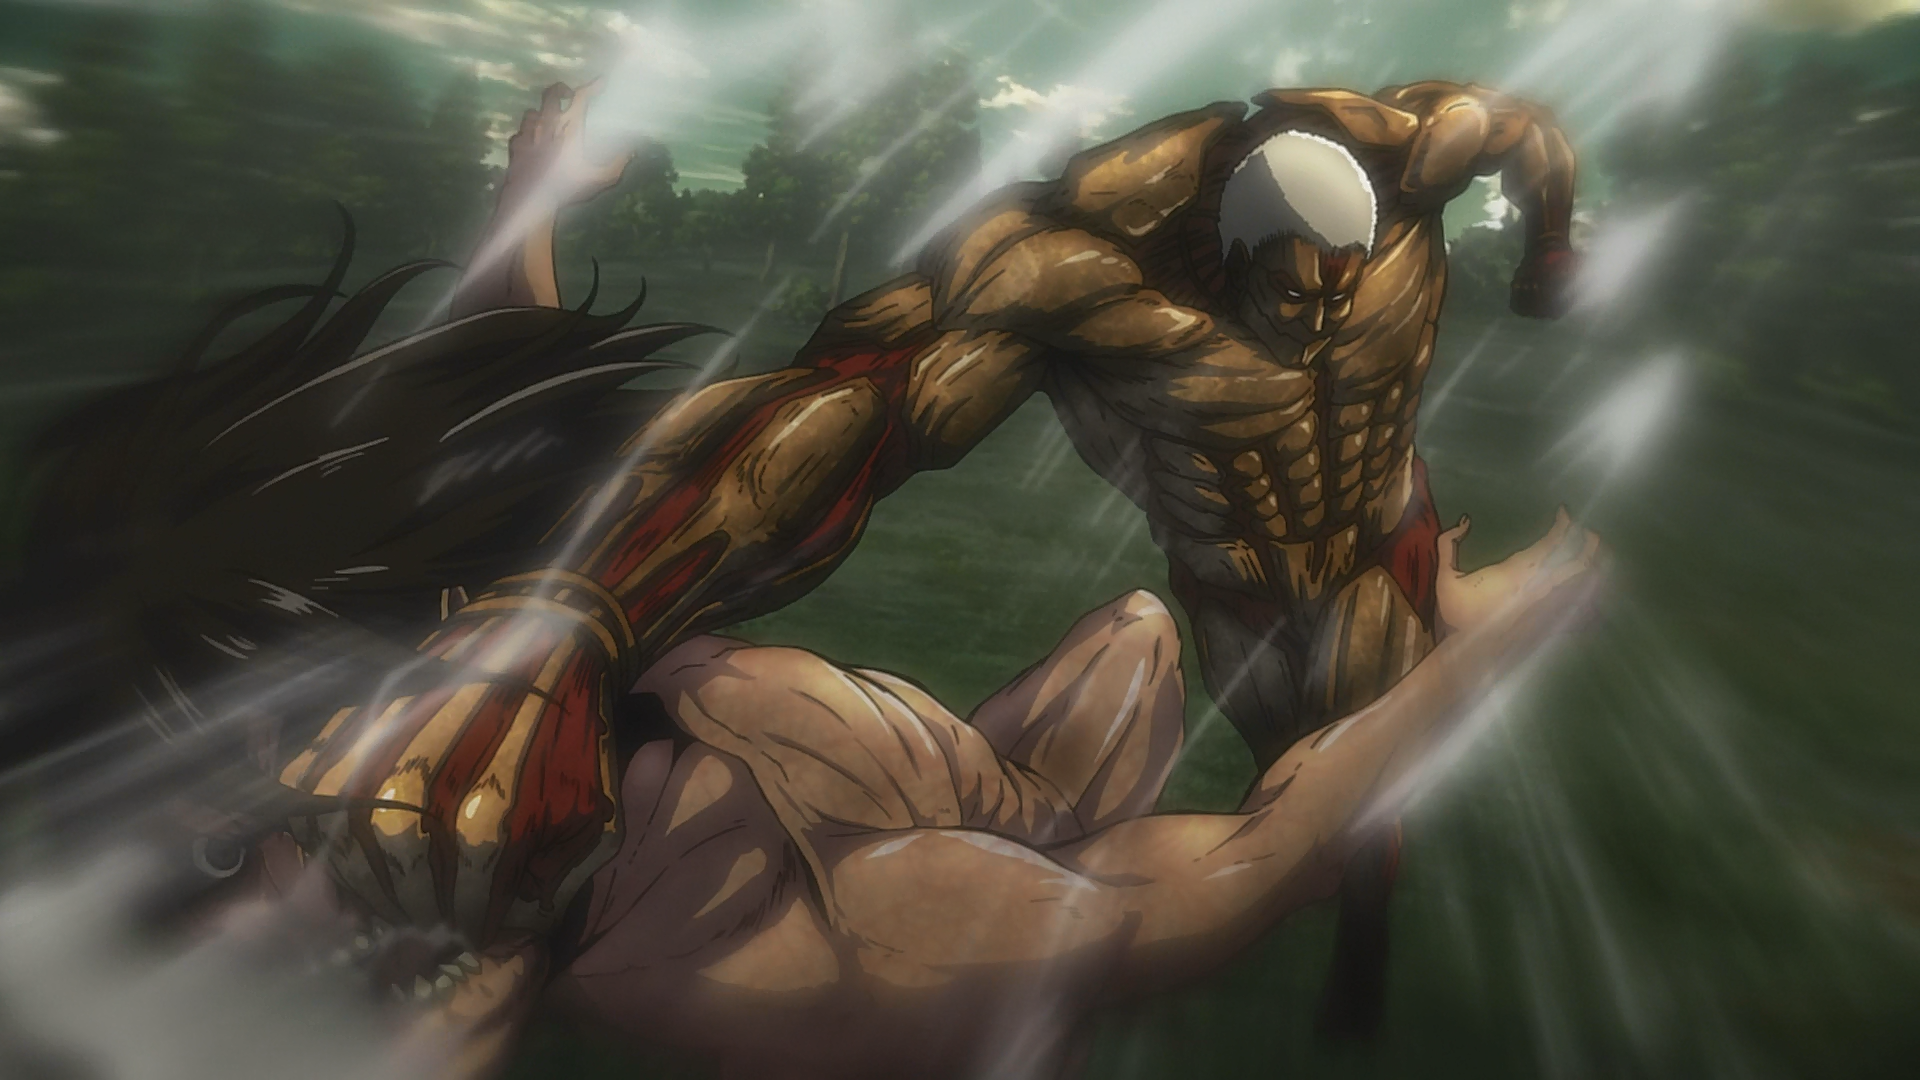 Shingeki no kyojin  Attack on titan anime, Titans anime, Attack on titan  season